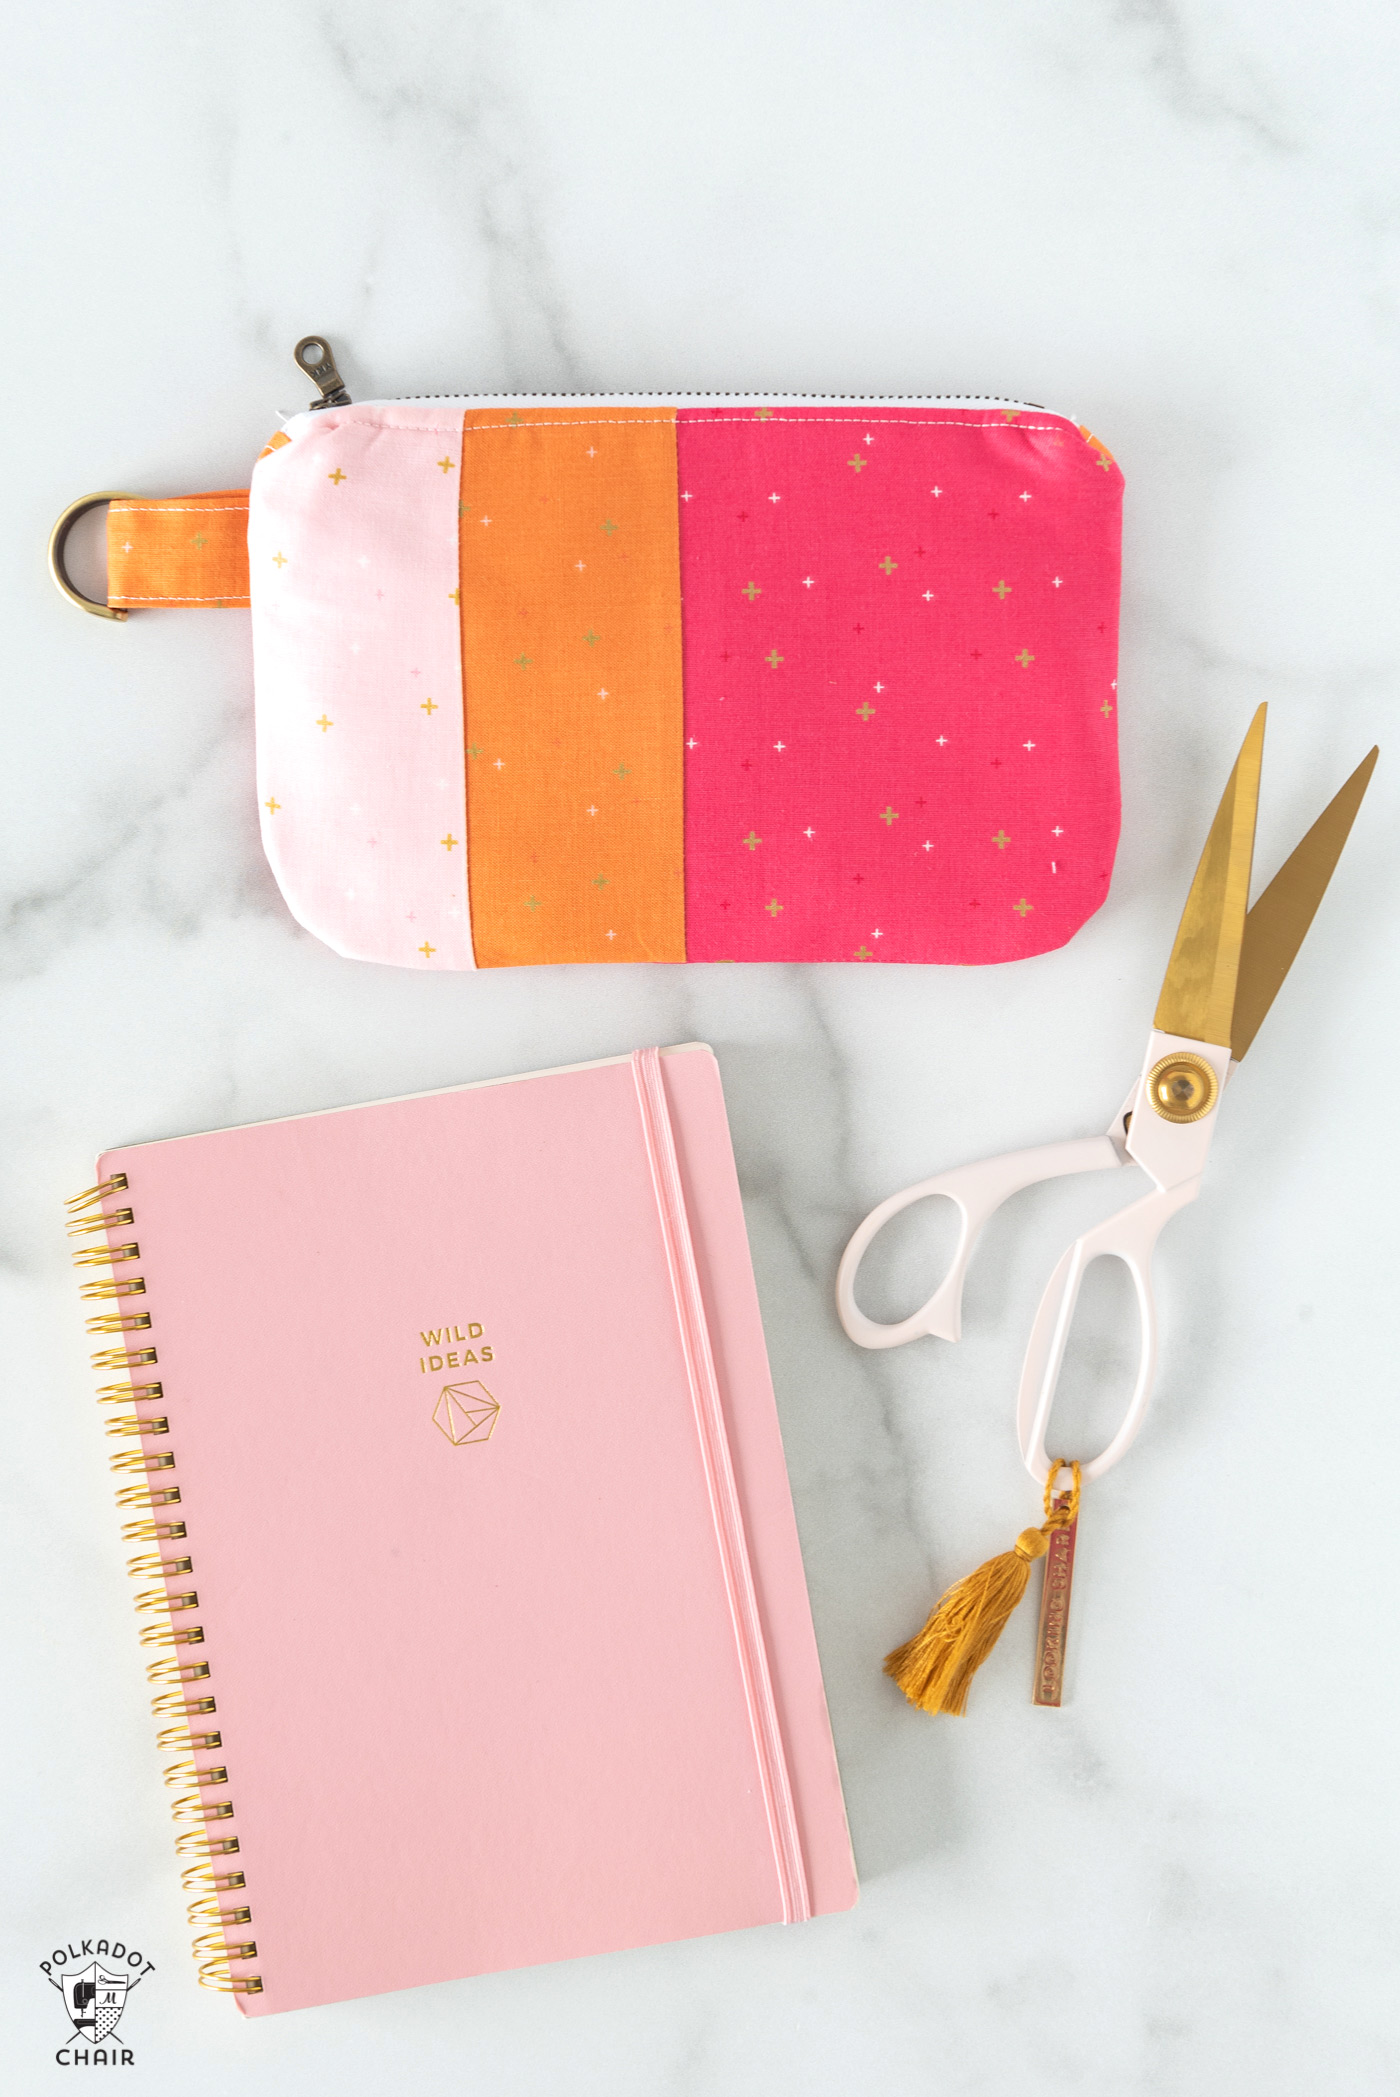 Pochette zippée rose et orange sur carnet avec stylos